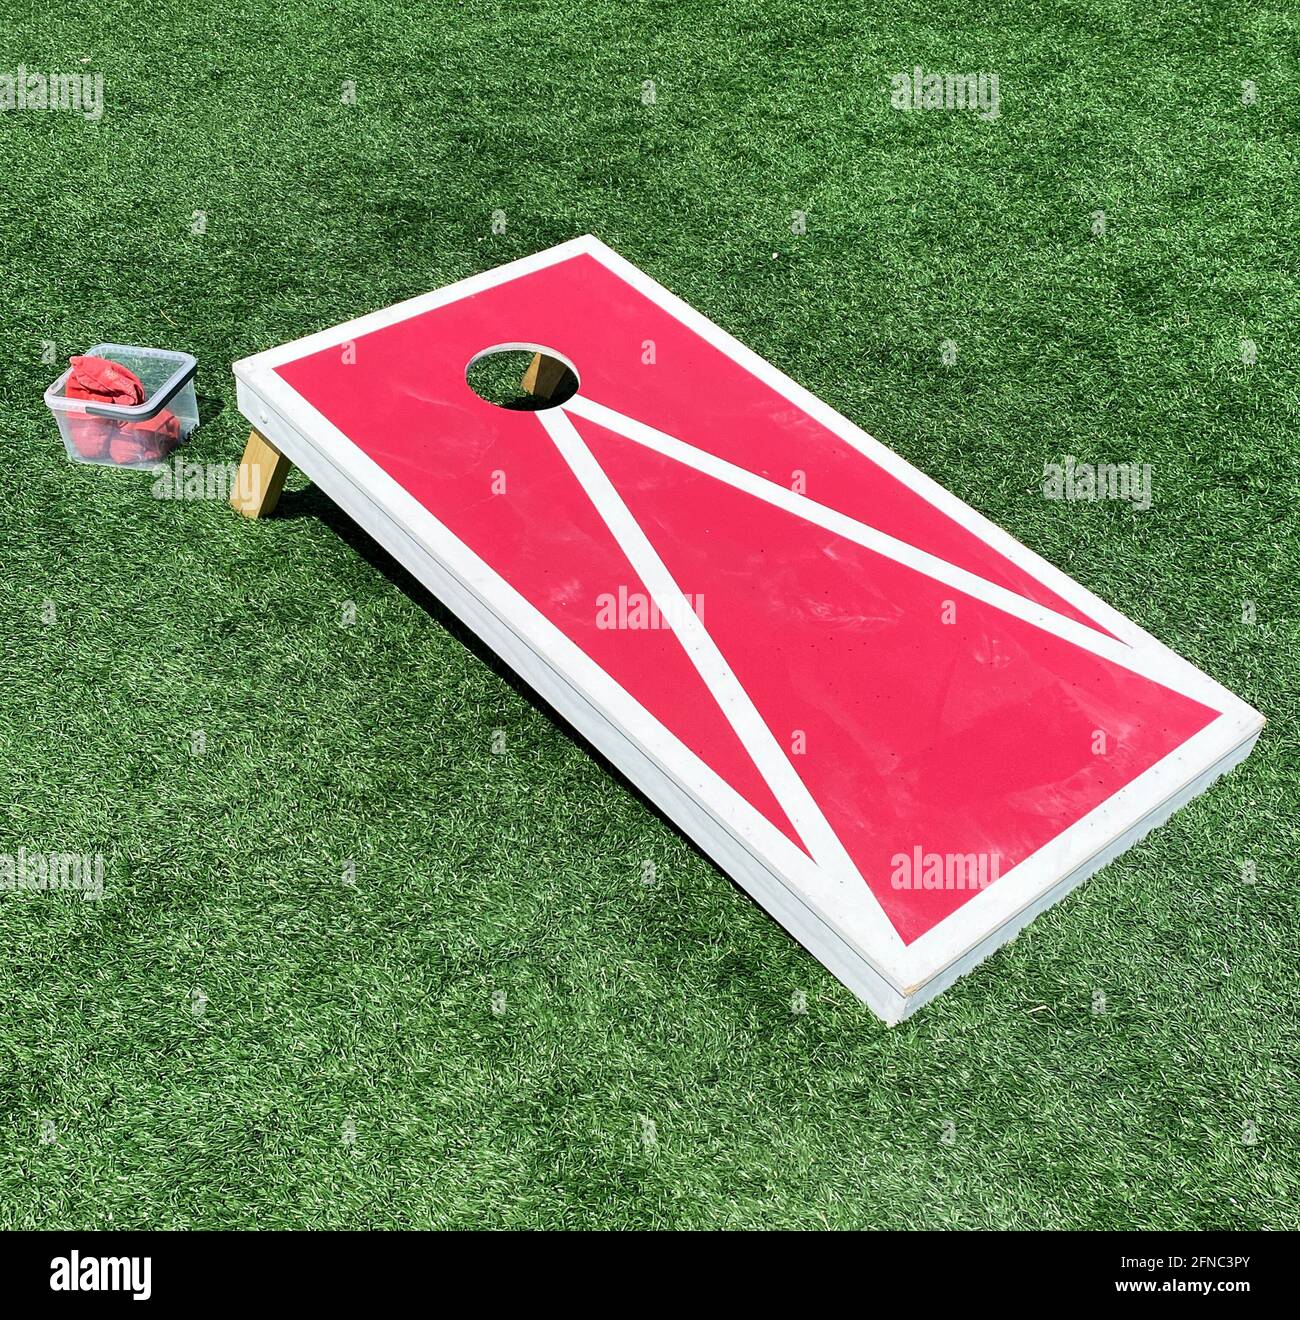 La bolsa de frijoles rojos y blancos sacude el juego de la cornhole en un  campo verde del césped Fotografía de stock - Alamy